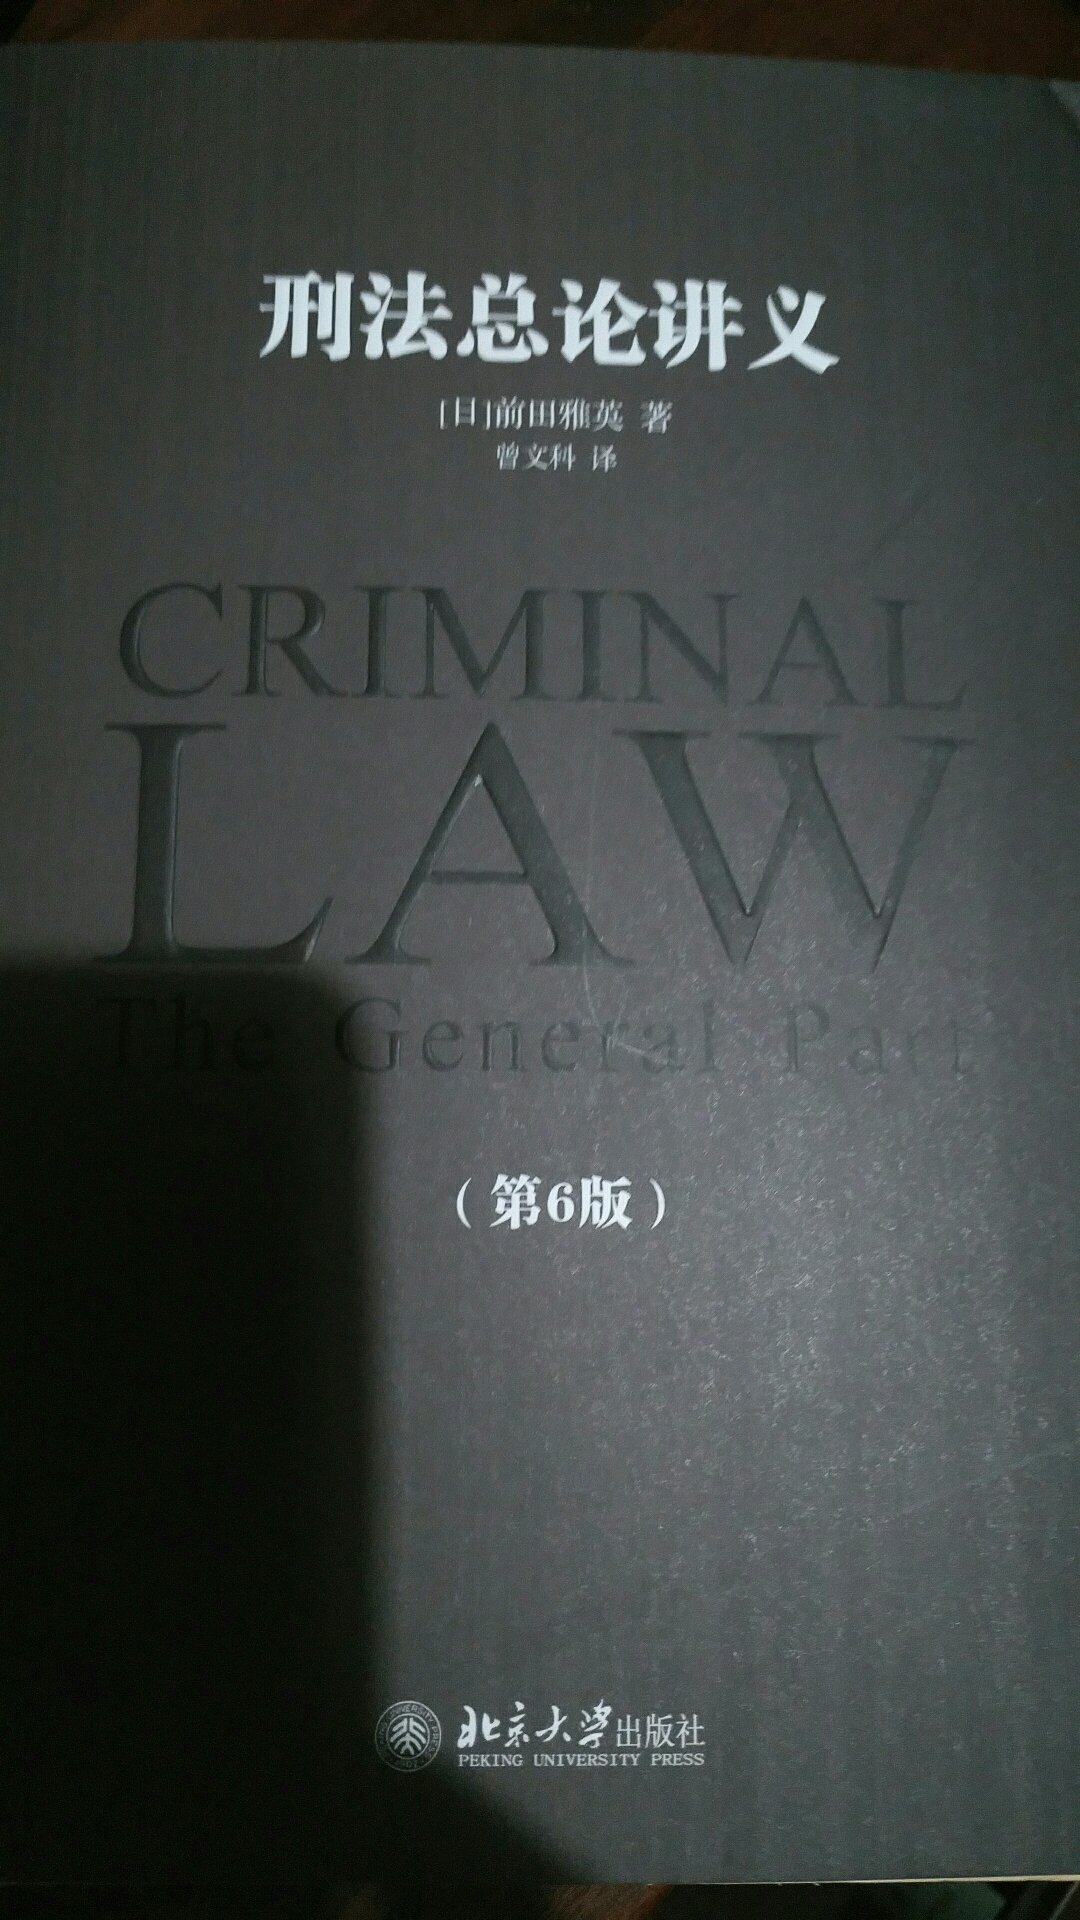 618，真是爱书人的节日！书不错，是我感兴趣的法律书。